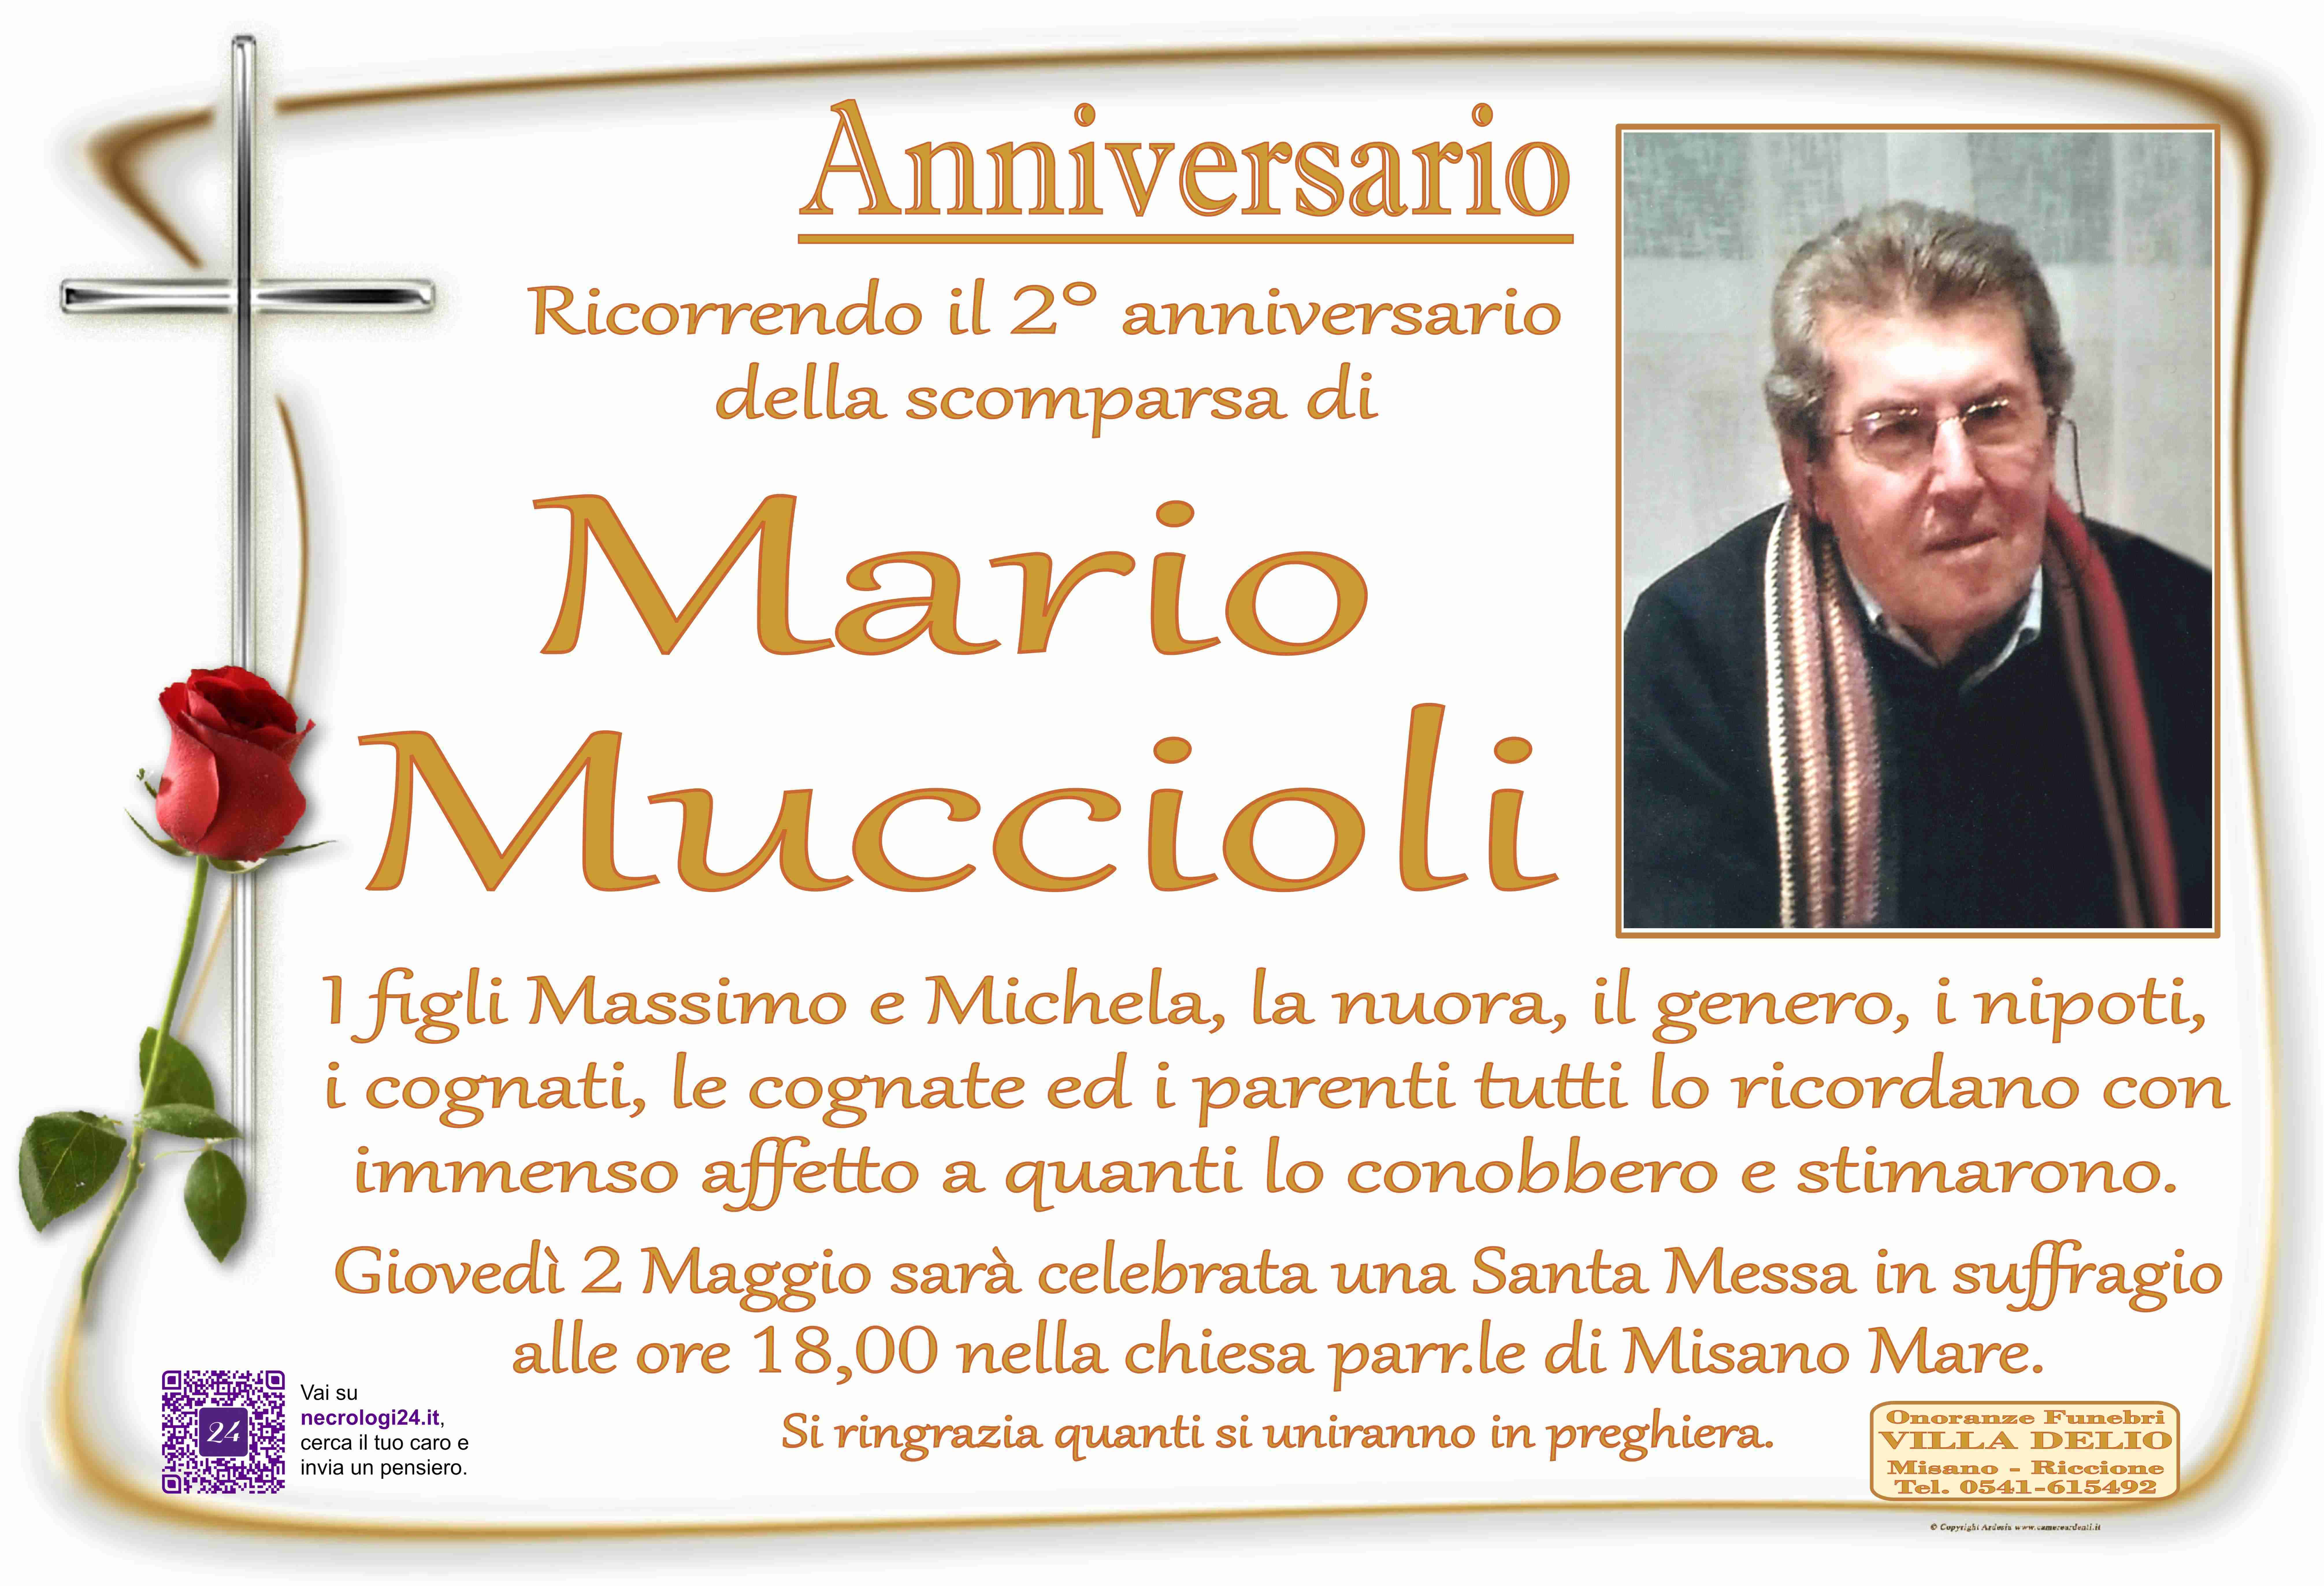 Mario Muccioli